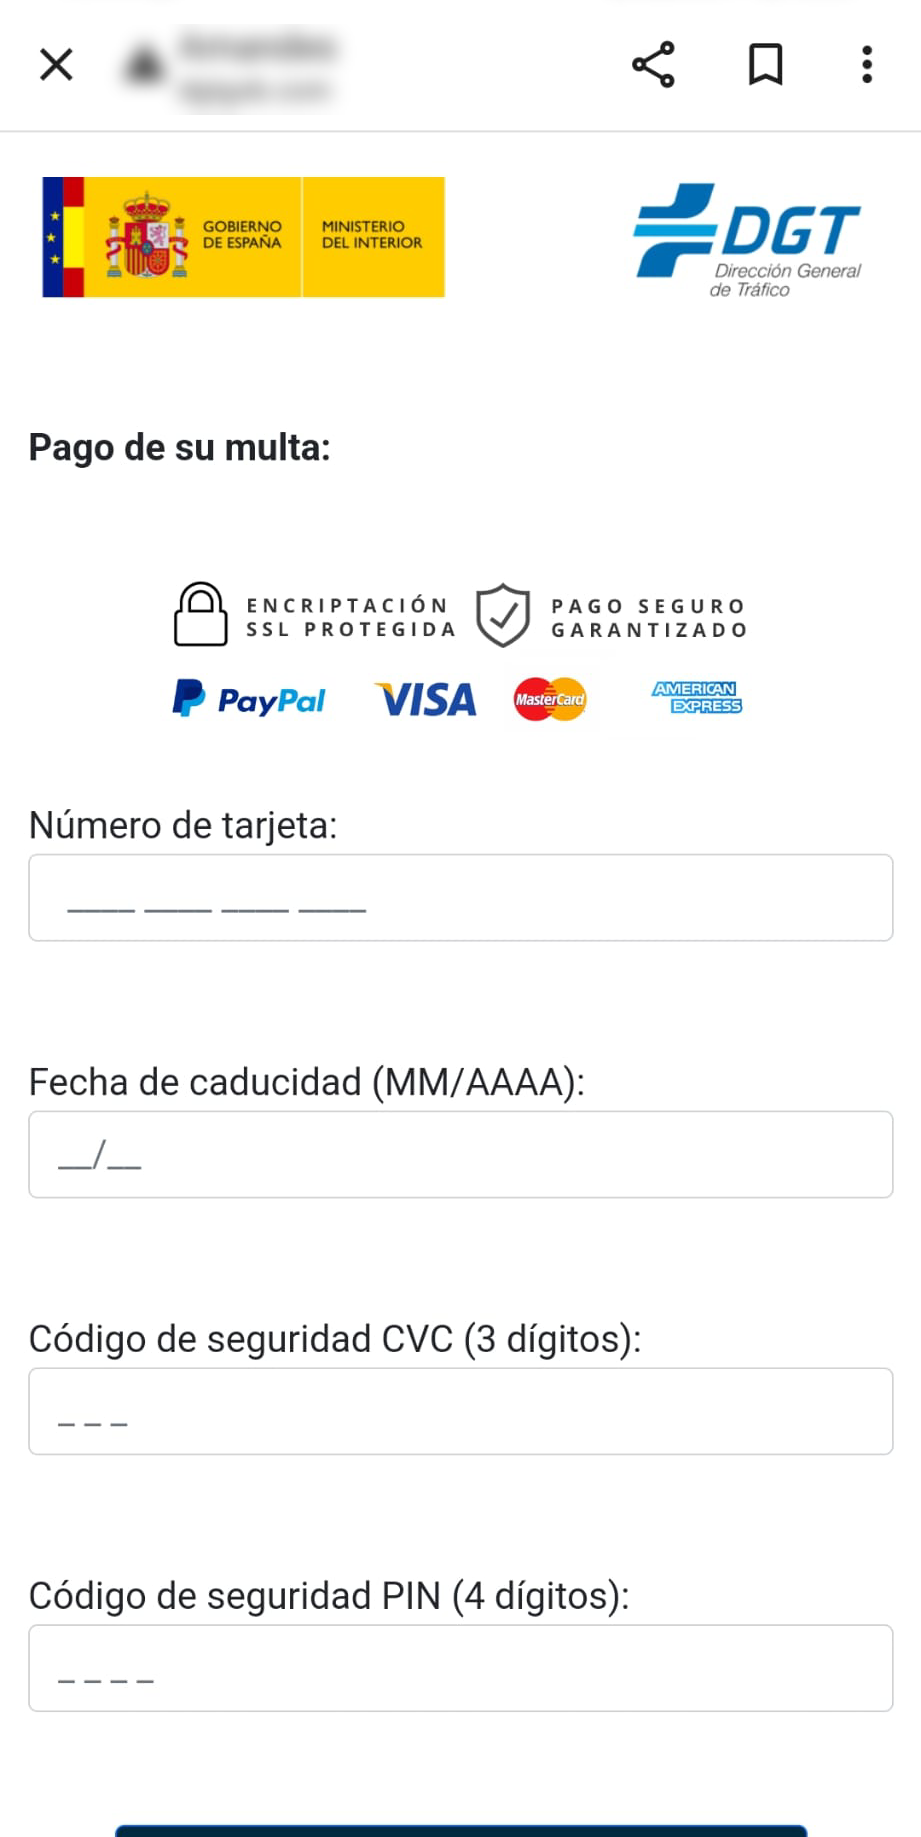 Se muestra una ventana la cual contiene un formulario para que el usuario rellene sus datos bancarios: número de tarjeta, fecha de caducidad (MM/AA) y código de seguridad CVC.